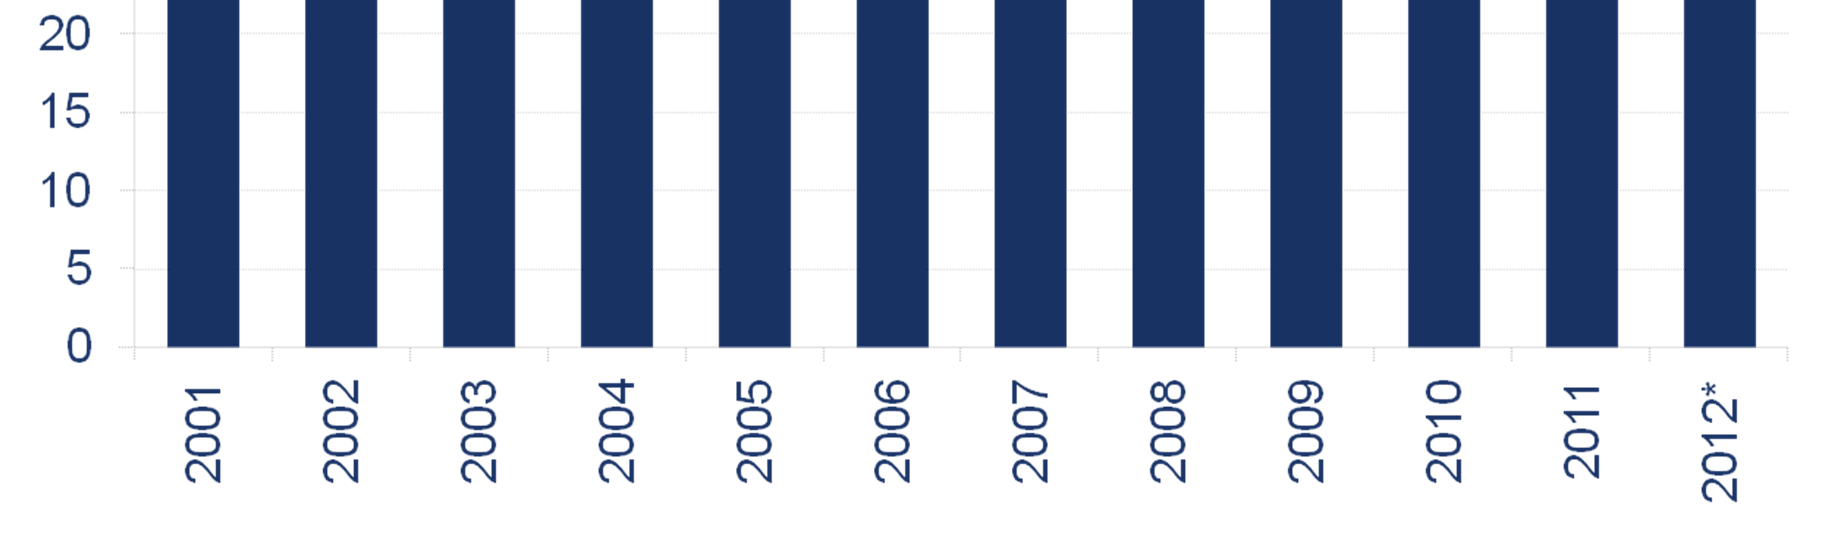 2009-2012: 13,4% (crescimento médio do